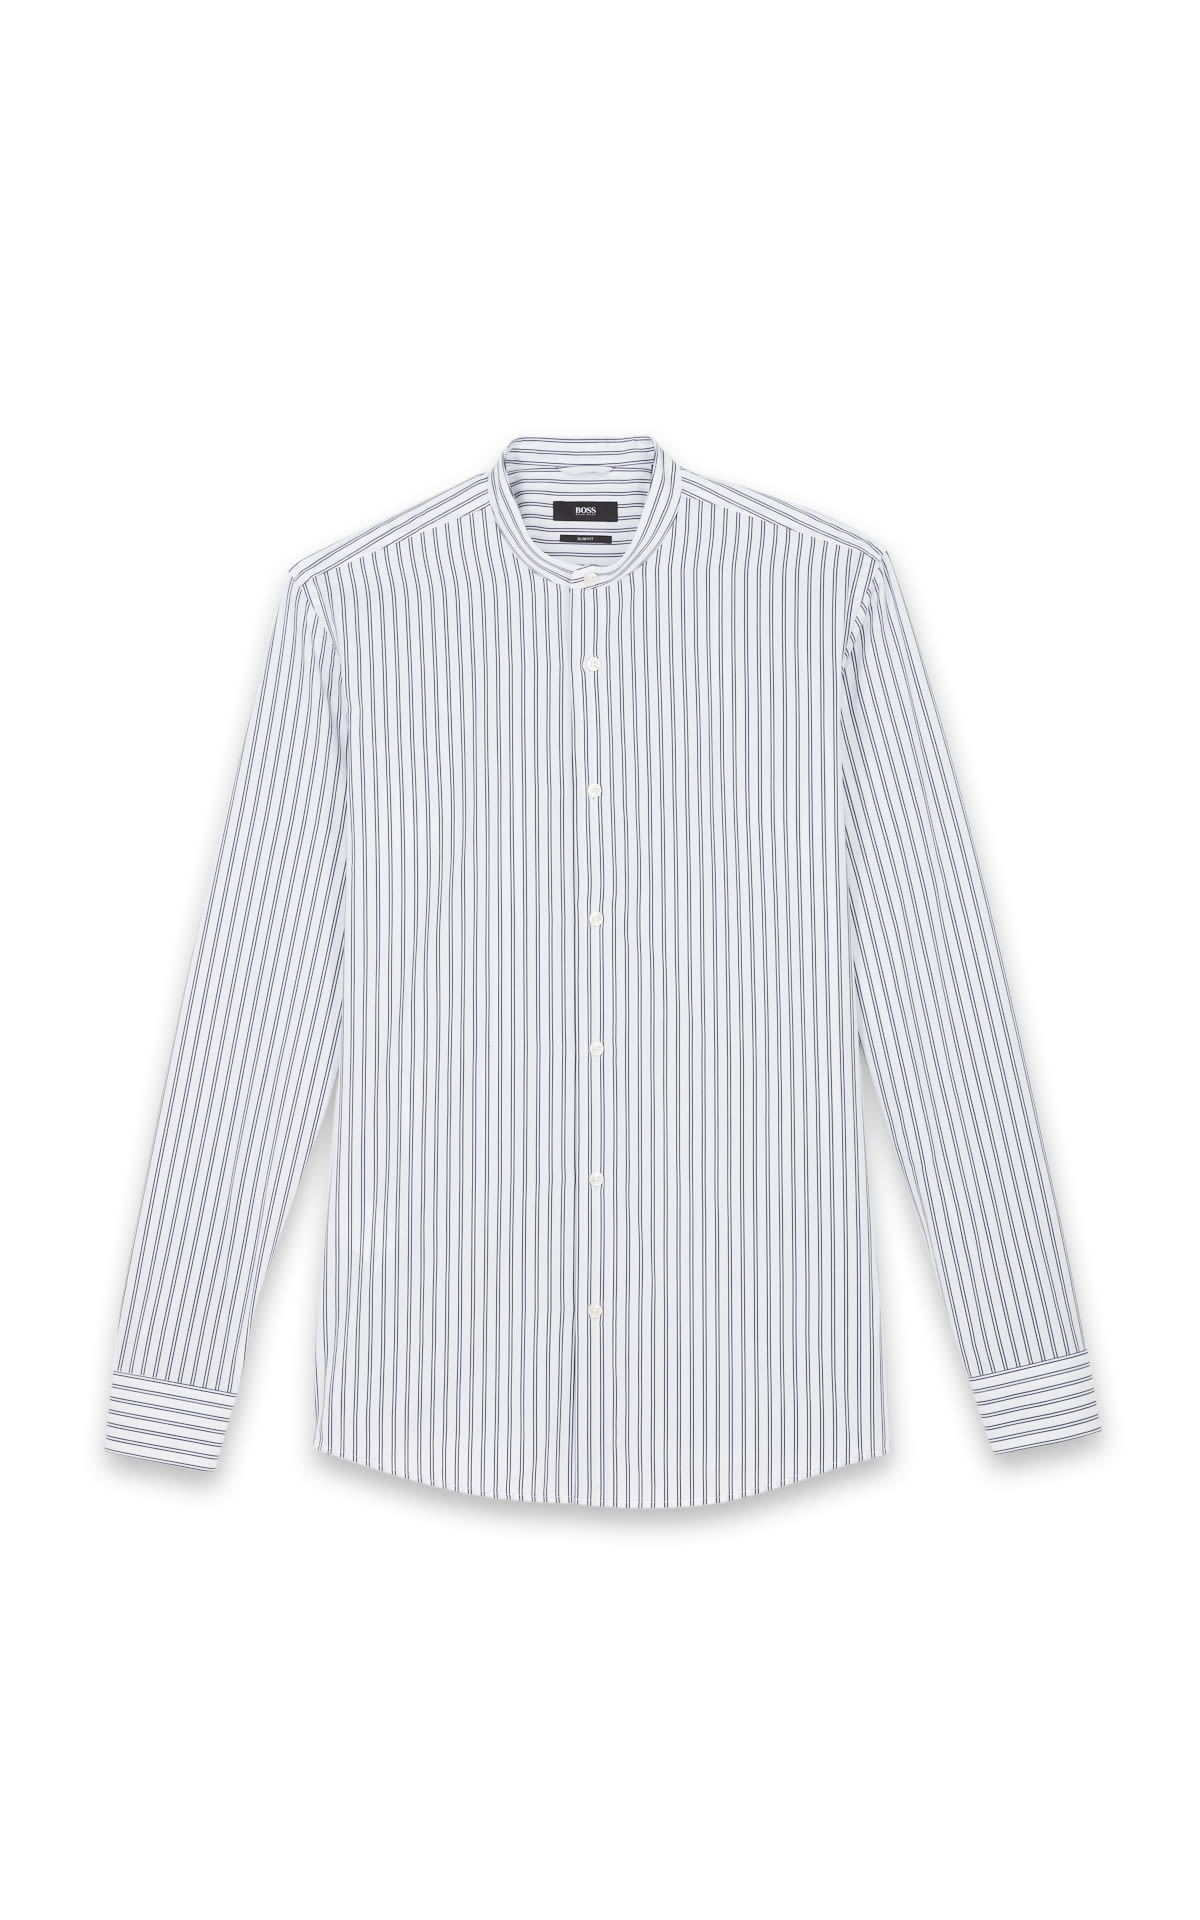 Mandarin collar striped shirt*